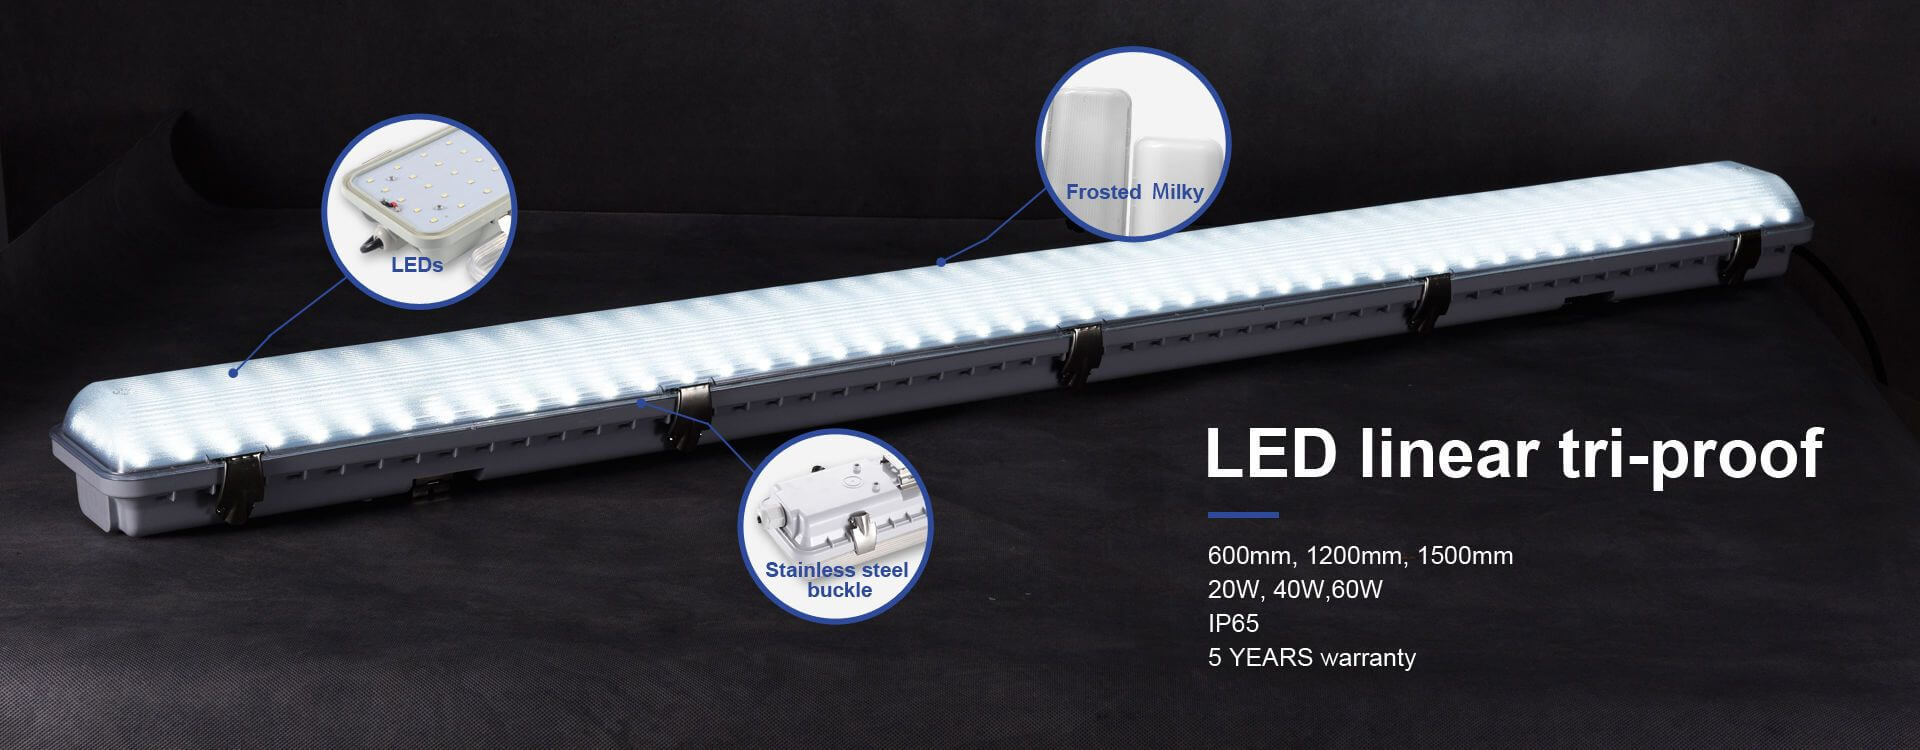 LED linear tri-proof